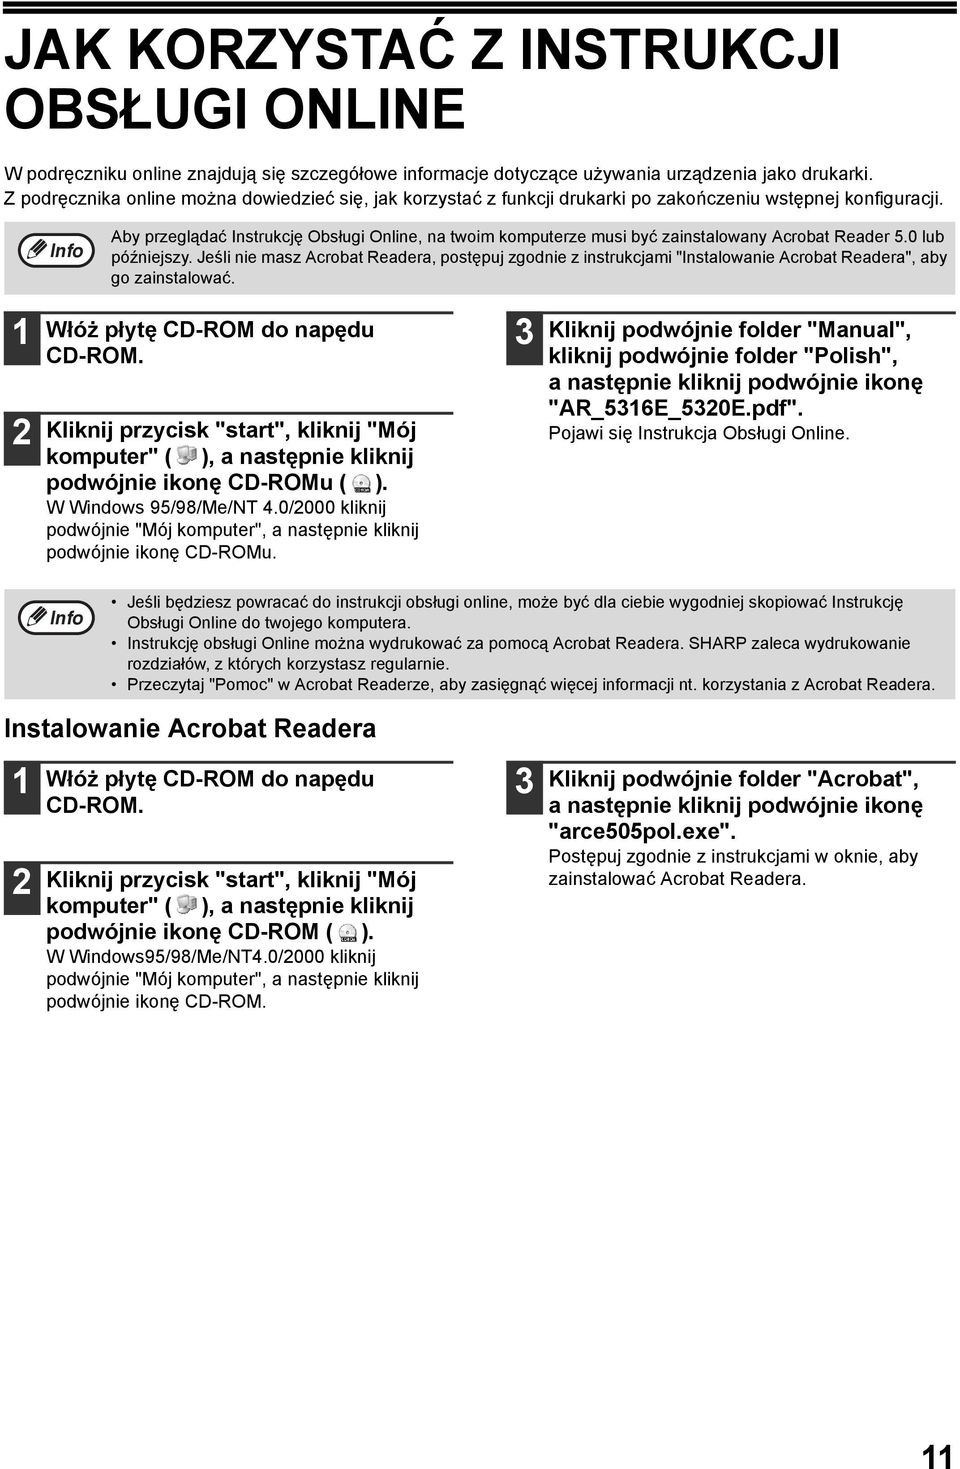 Aby przeglądać Instrukcję Obsługi Online, na twoim komputerze musi być zainstalowany Acrobat Reader 5.0 lub późniejszy.